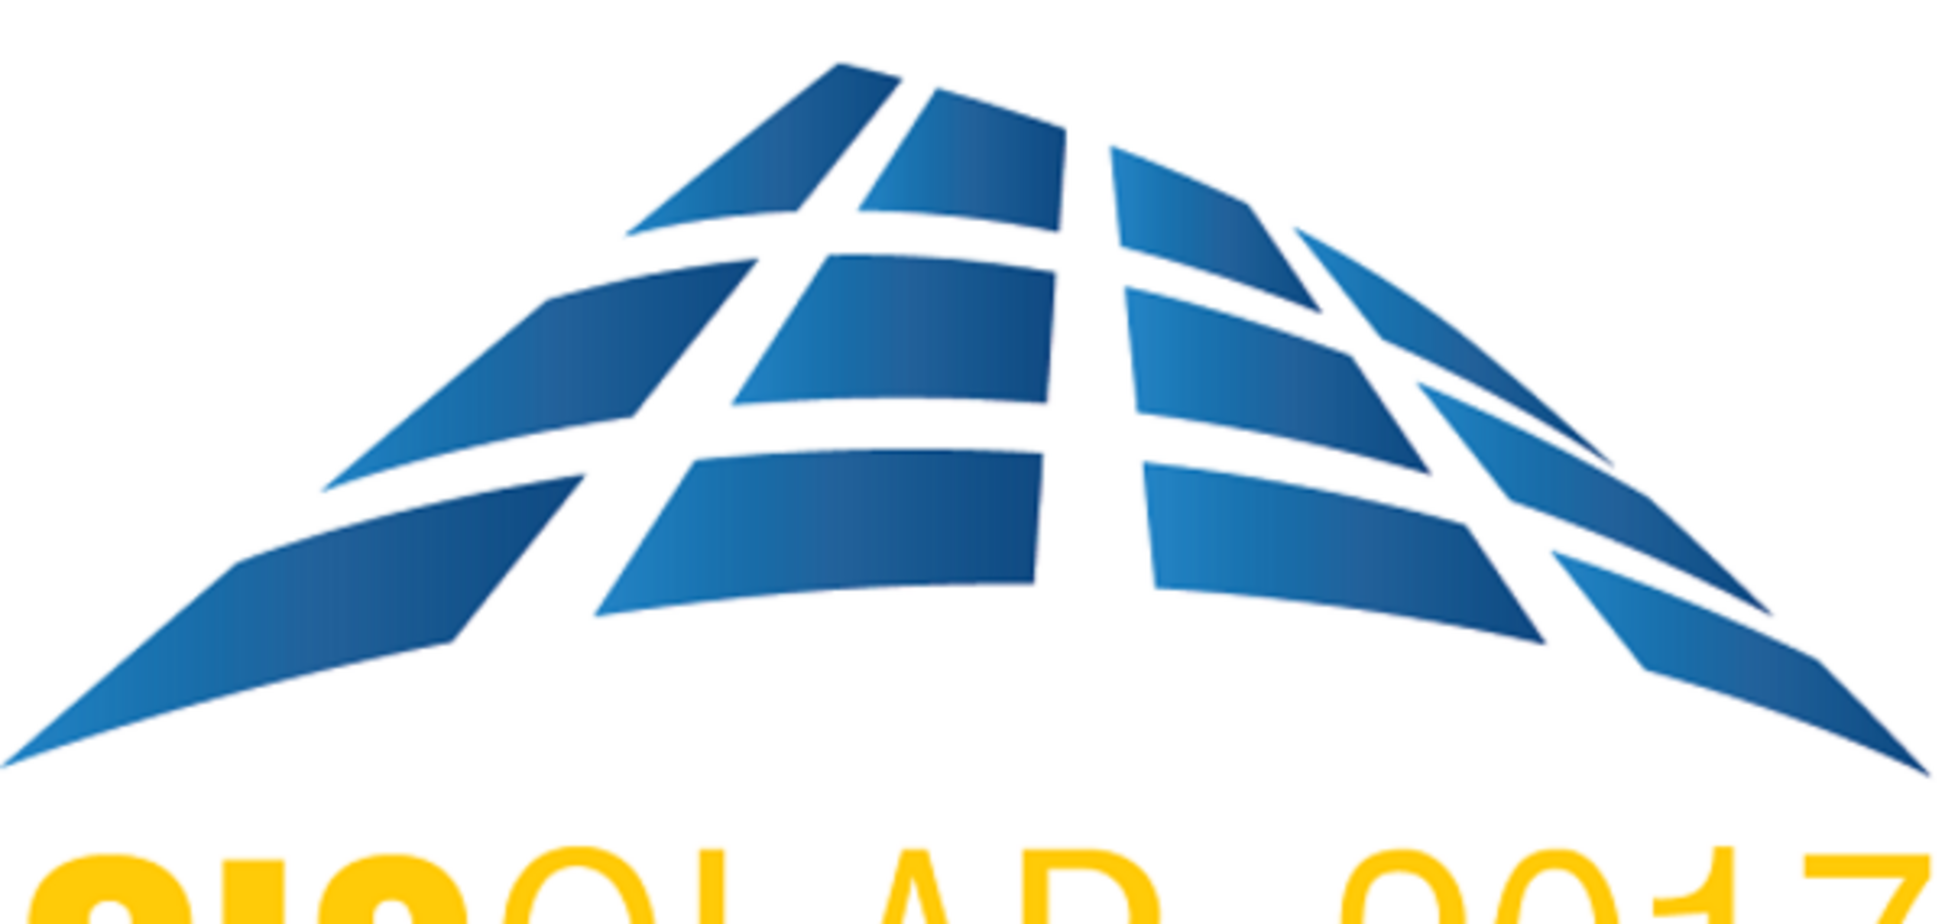 В центре внимания CISOLAR-2017 - новые развивающиеся рынки солнечной энергетики Европы